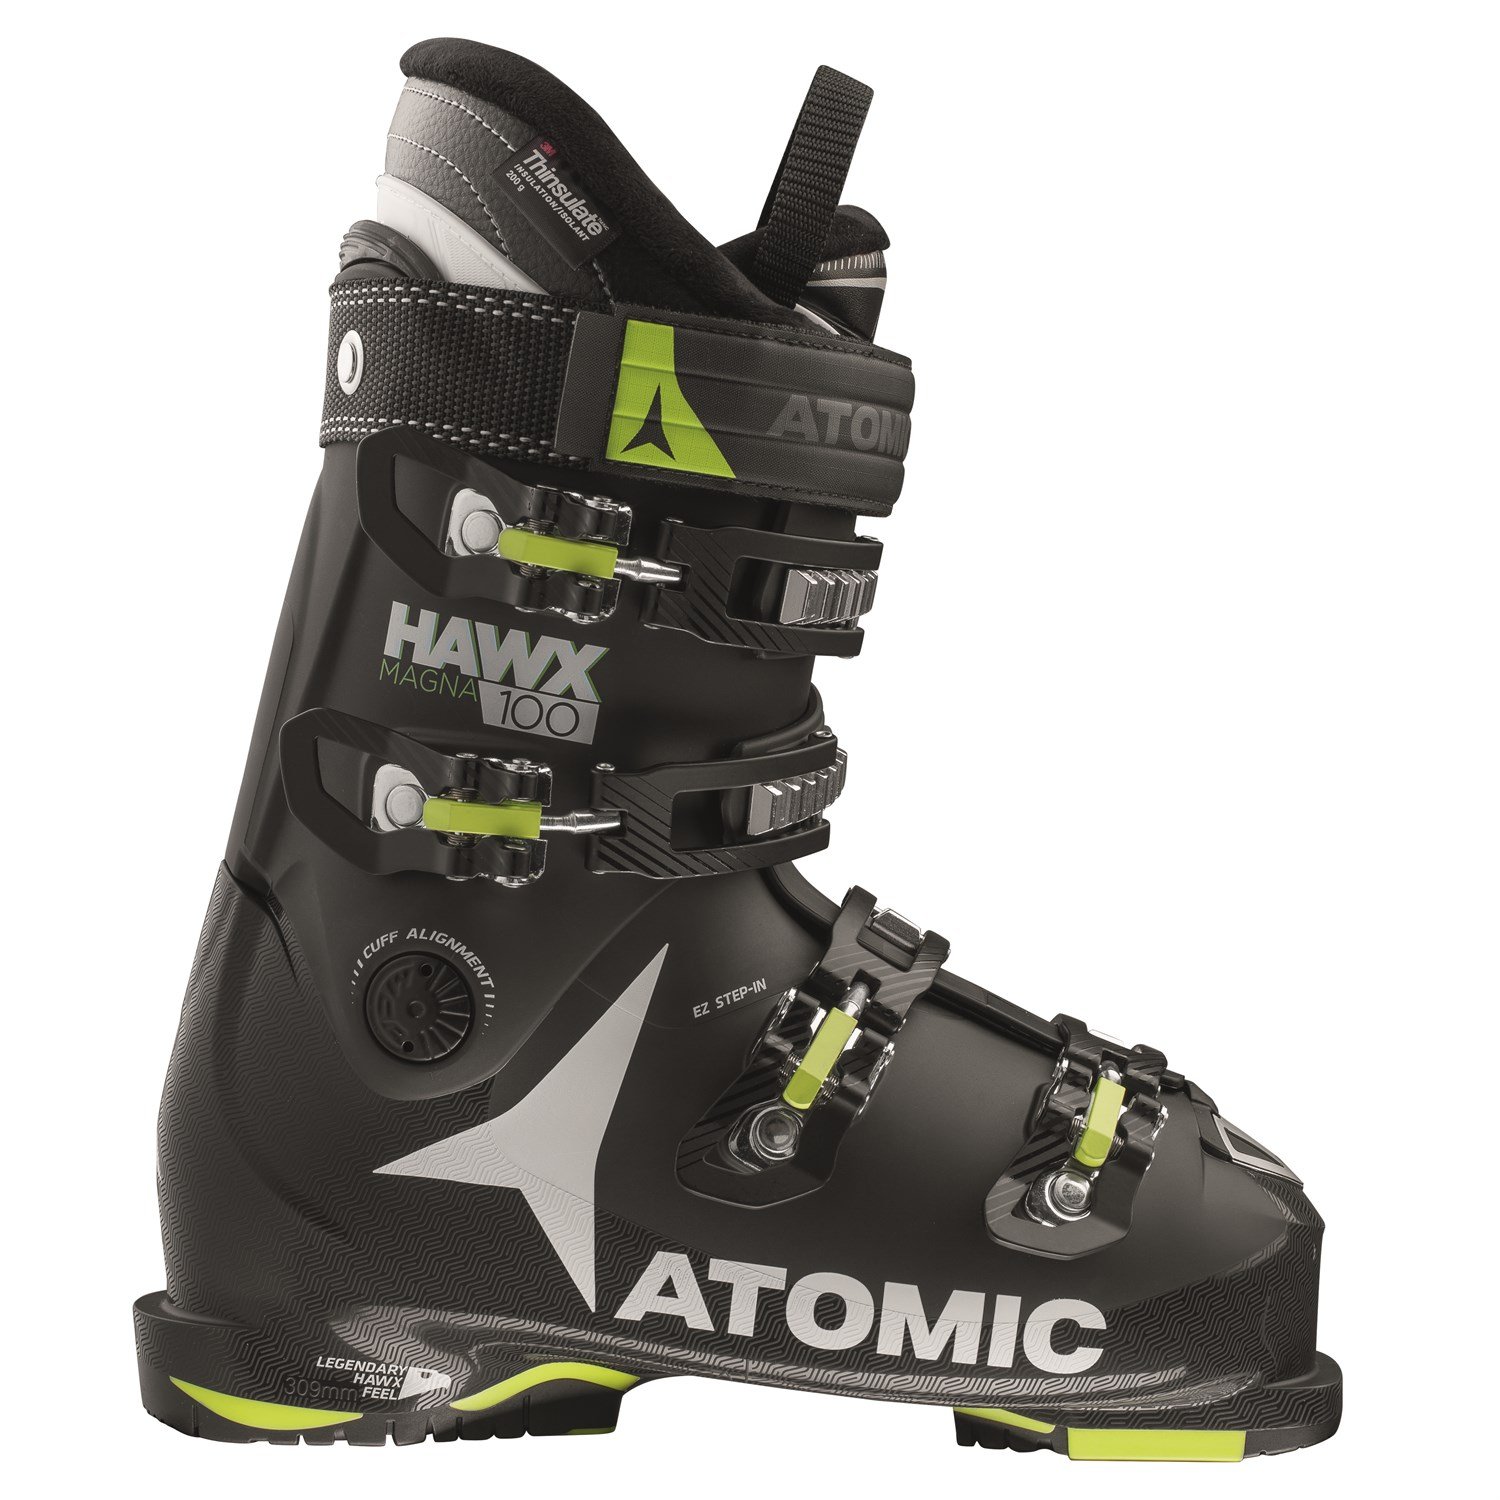 nederlaag ondersteuning cement Atomic Hawx Magna 100 Ski Boots 2018 | evo